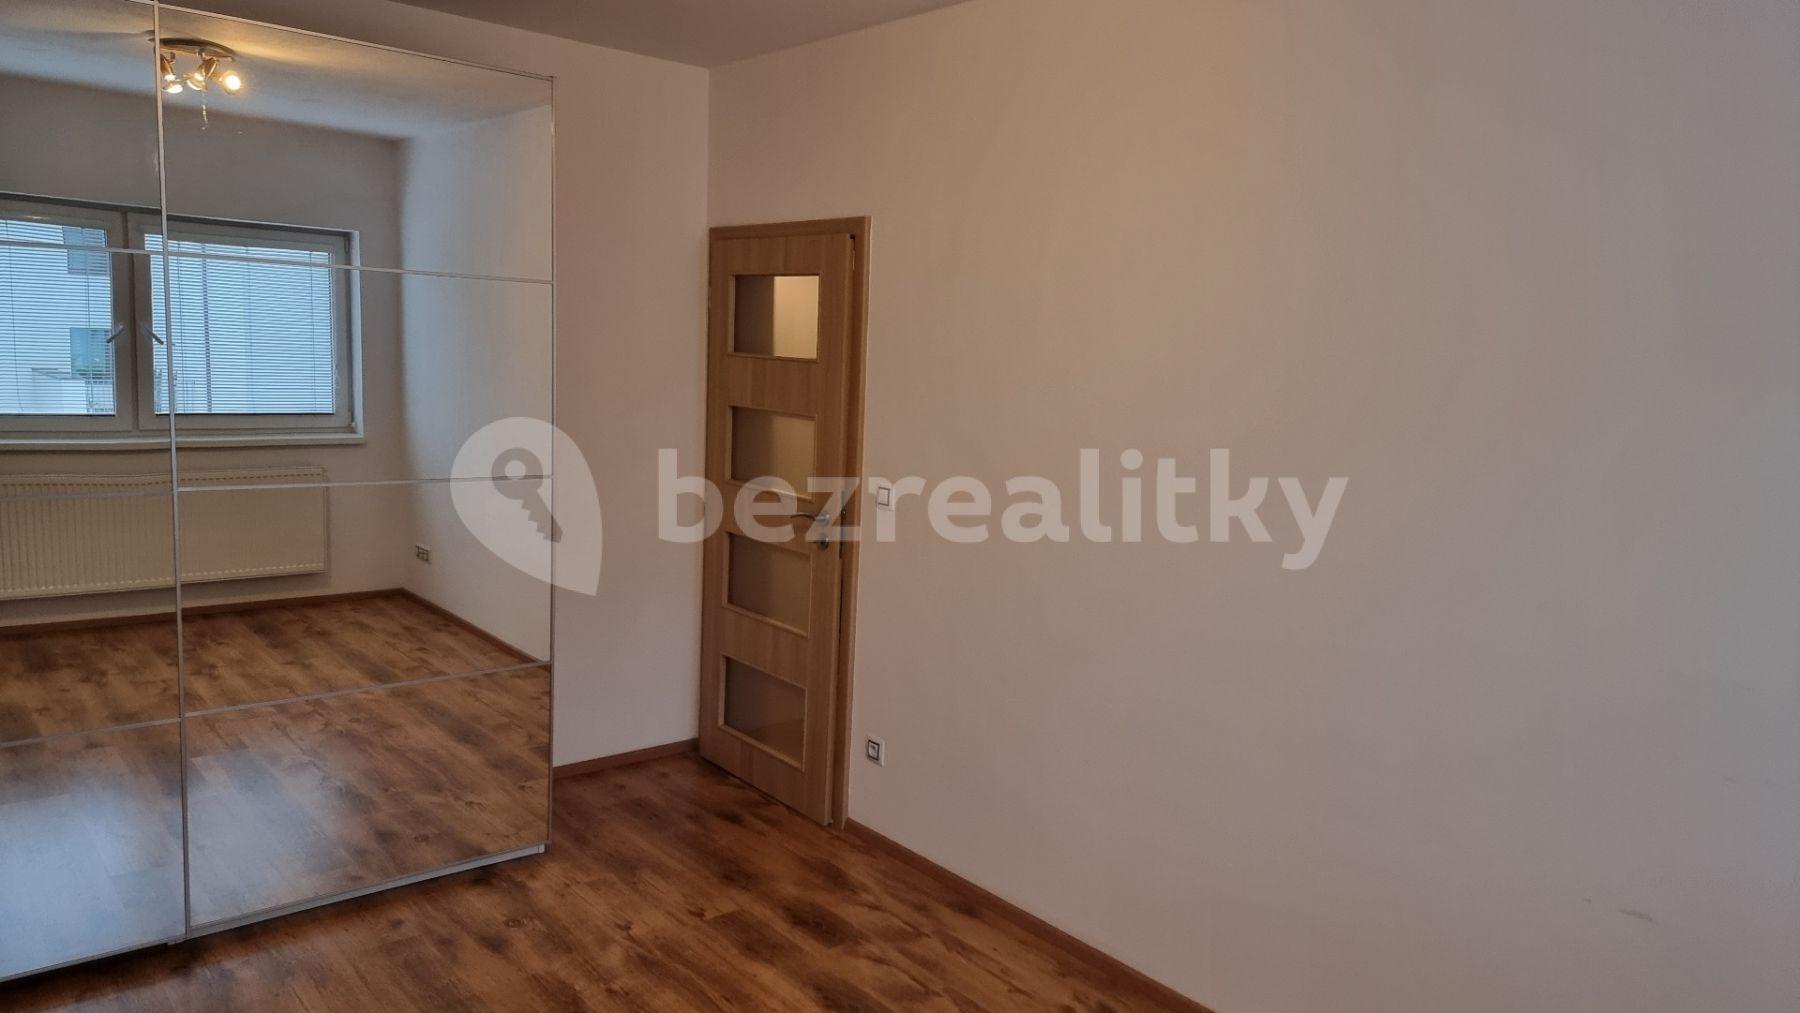 1 bedroom with open-plan kitchen flat for sale, 50 m², Višňová, Moravany, Jihomoravský Region